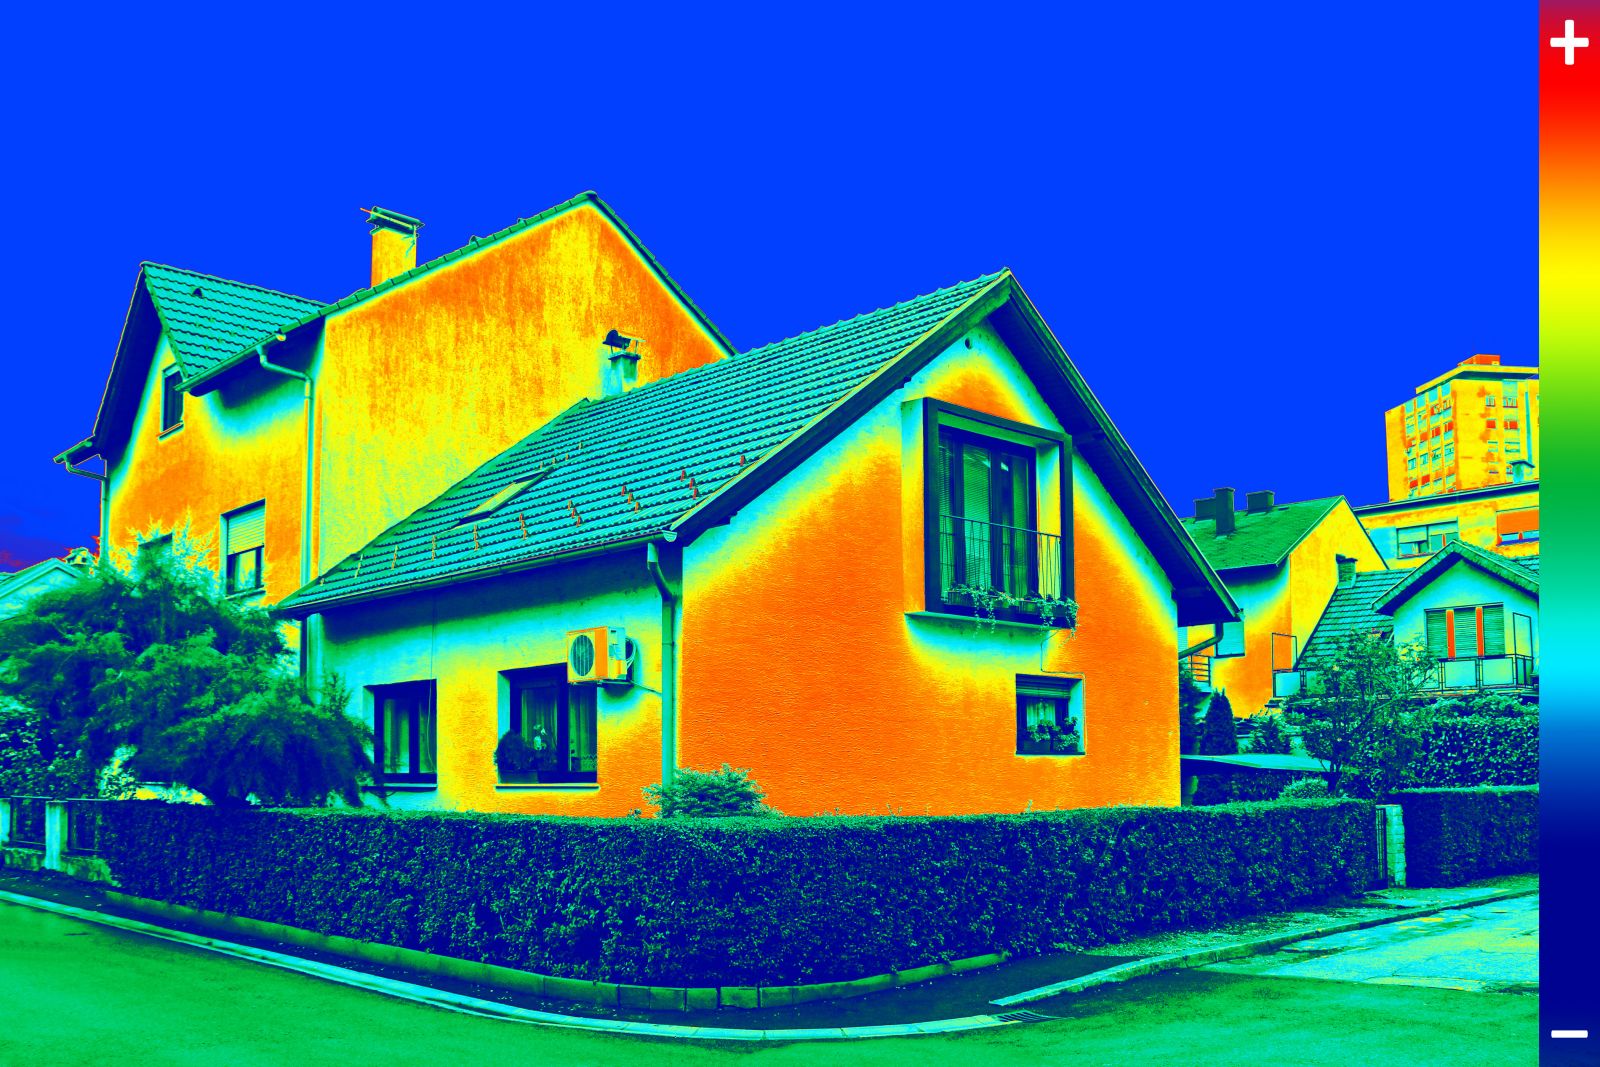 La thermographie infrarouge permet de visualiser facilement les anomalies d’un bâtiment